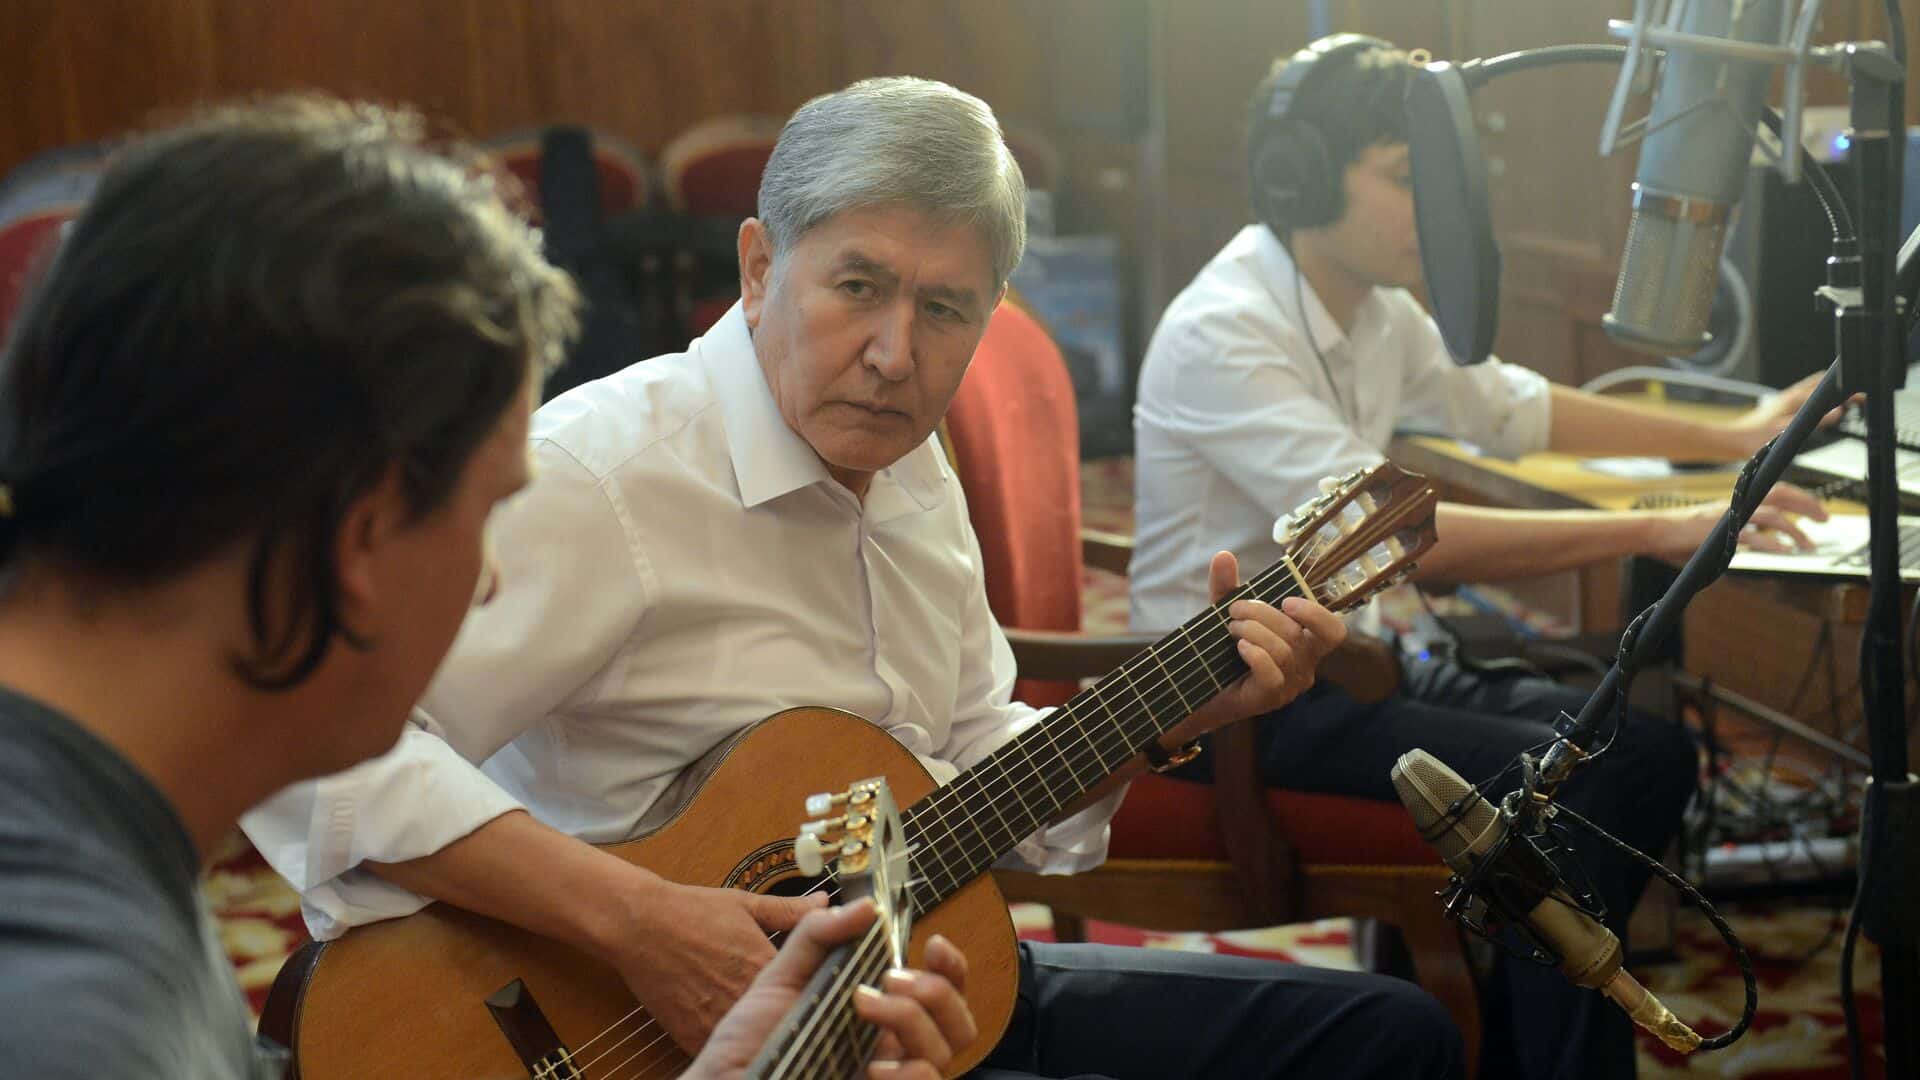 Атамбаев может заработать до 200 сомов на своих песнях — «Кыргызпатент» готов выплатить гонорар